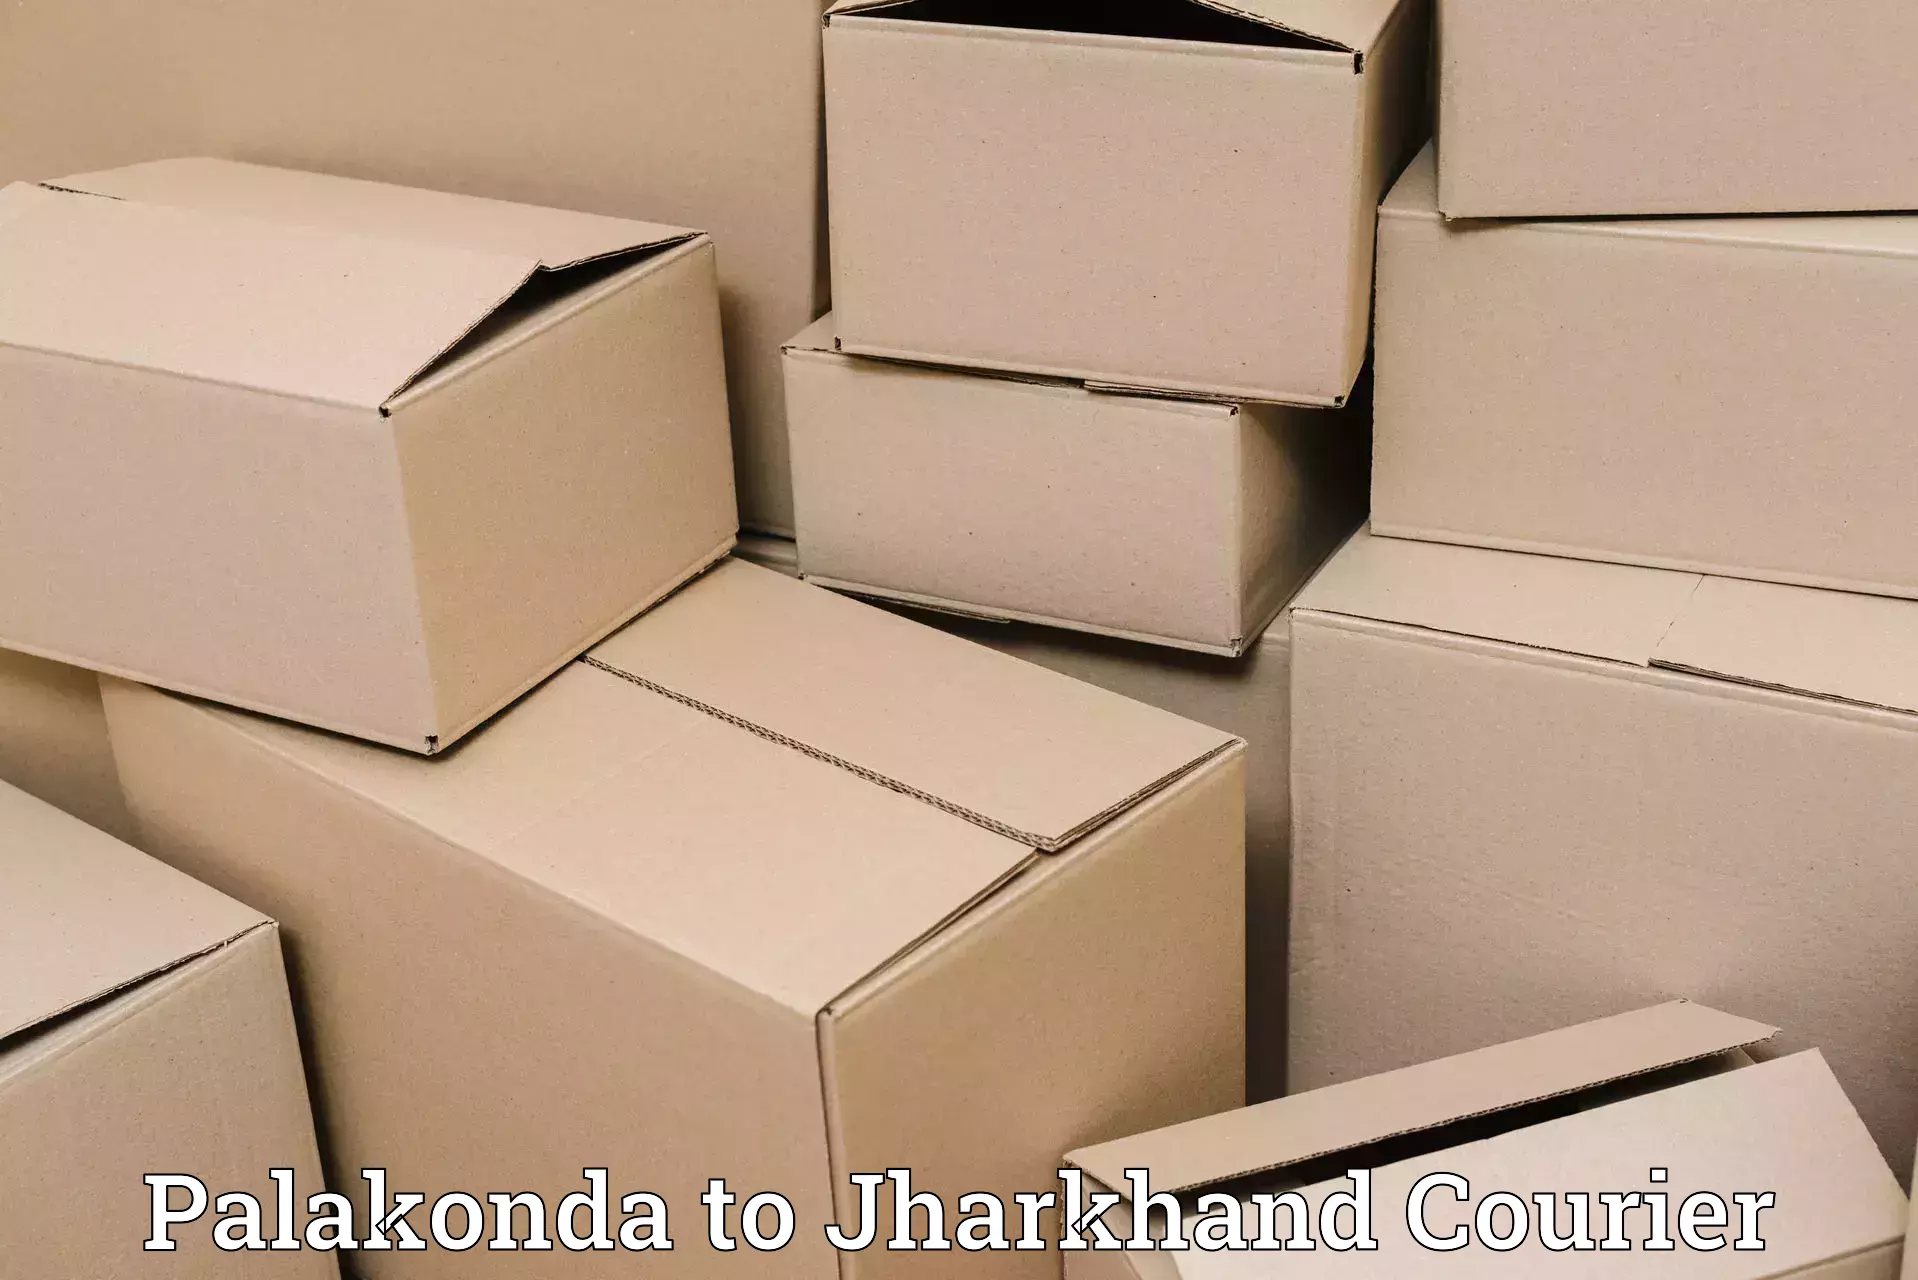 Logistics service provider Palakonda to Bagodar